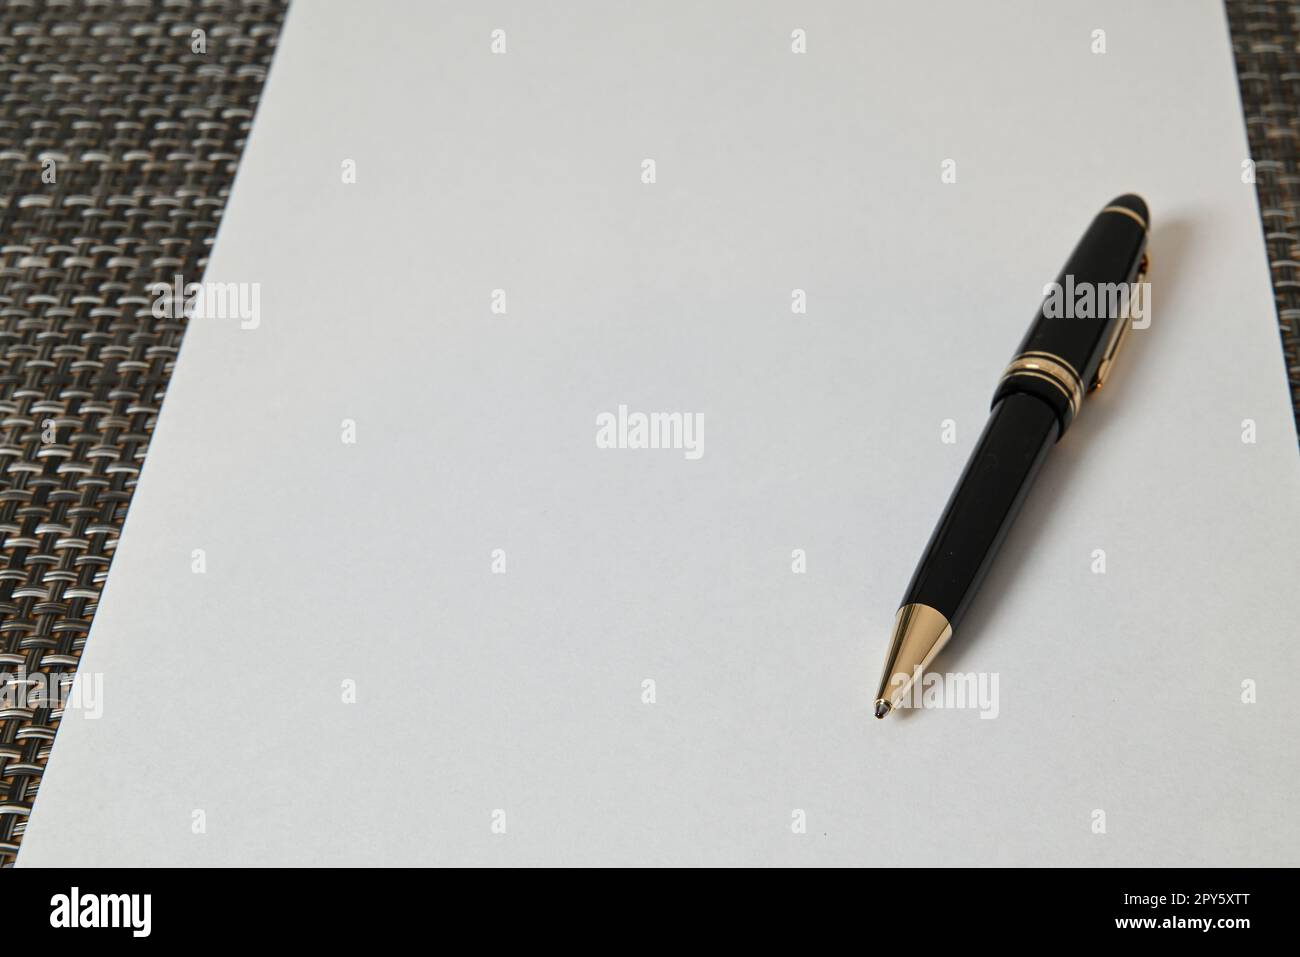 Ballpoint pen on white sheet of paper Stock Photo